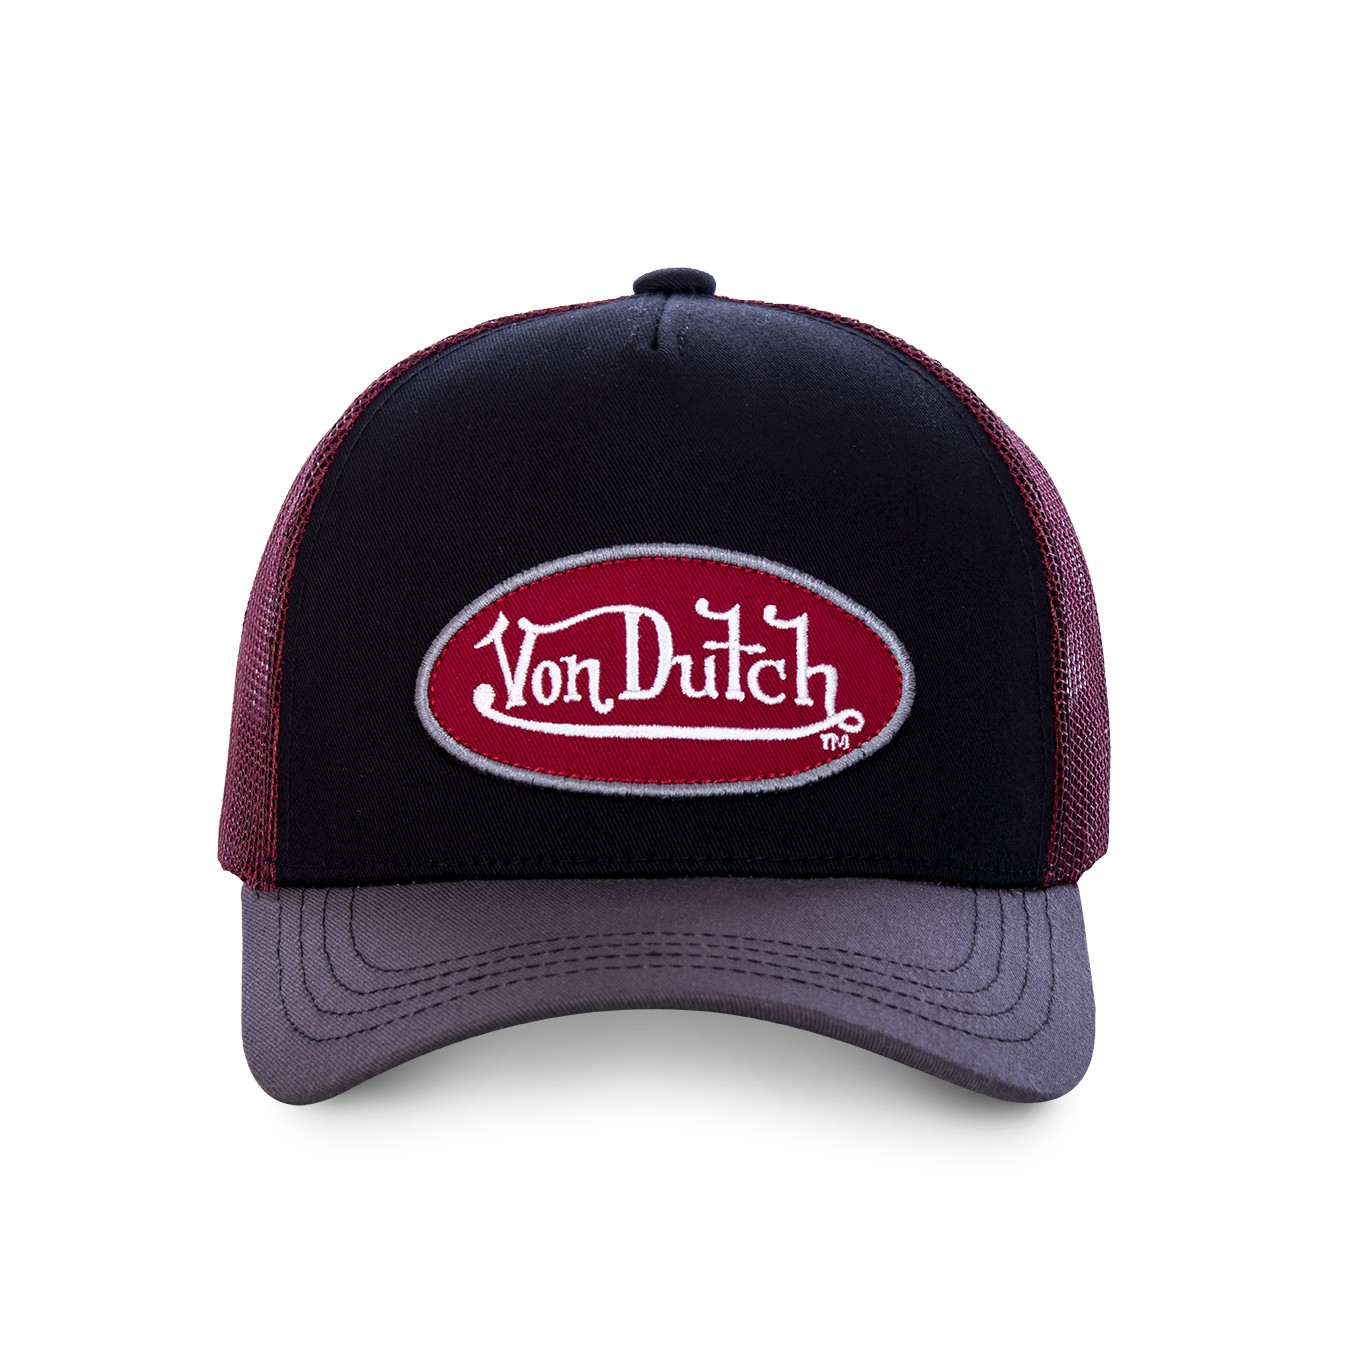 Men's Von Dutch black and red Col baseball cap - Von Dutch